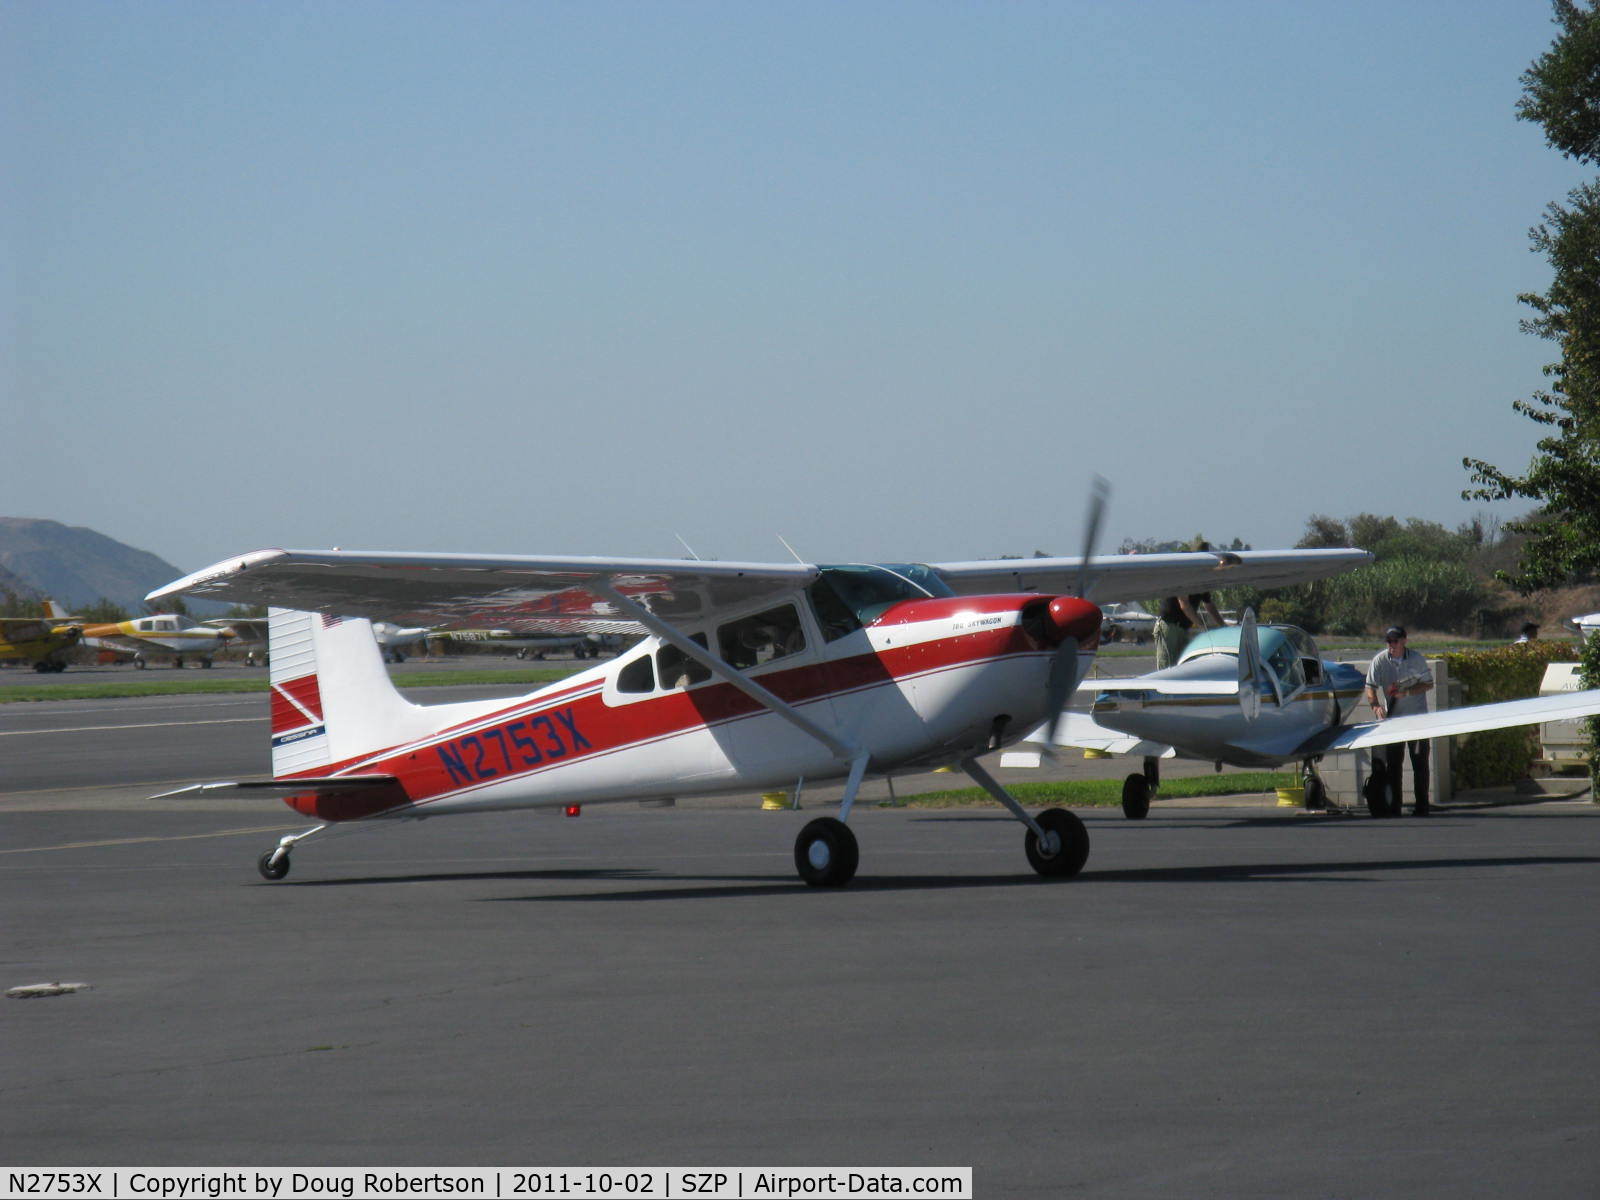 N2753X, 1965 Cessna 180H Skywagon C/N 18051553, 1965 Cessna 180H, Continental O-470 230 Hp, taxi